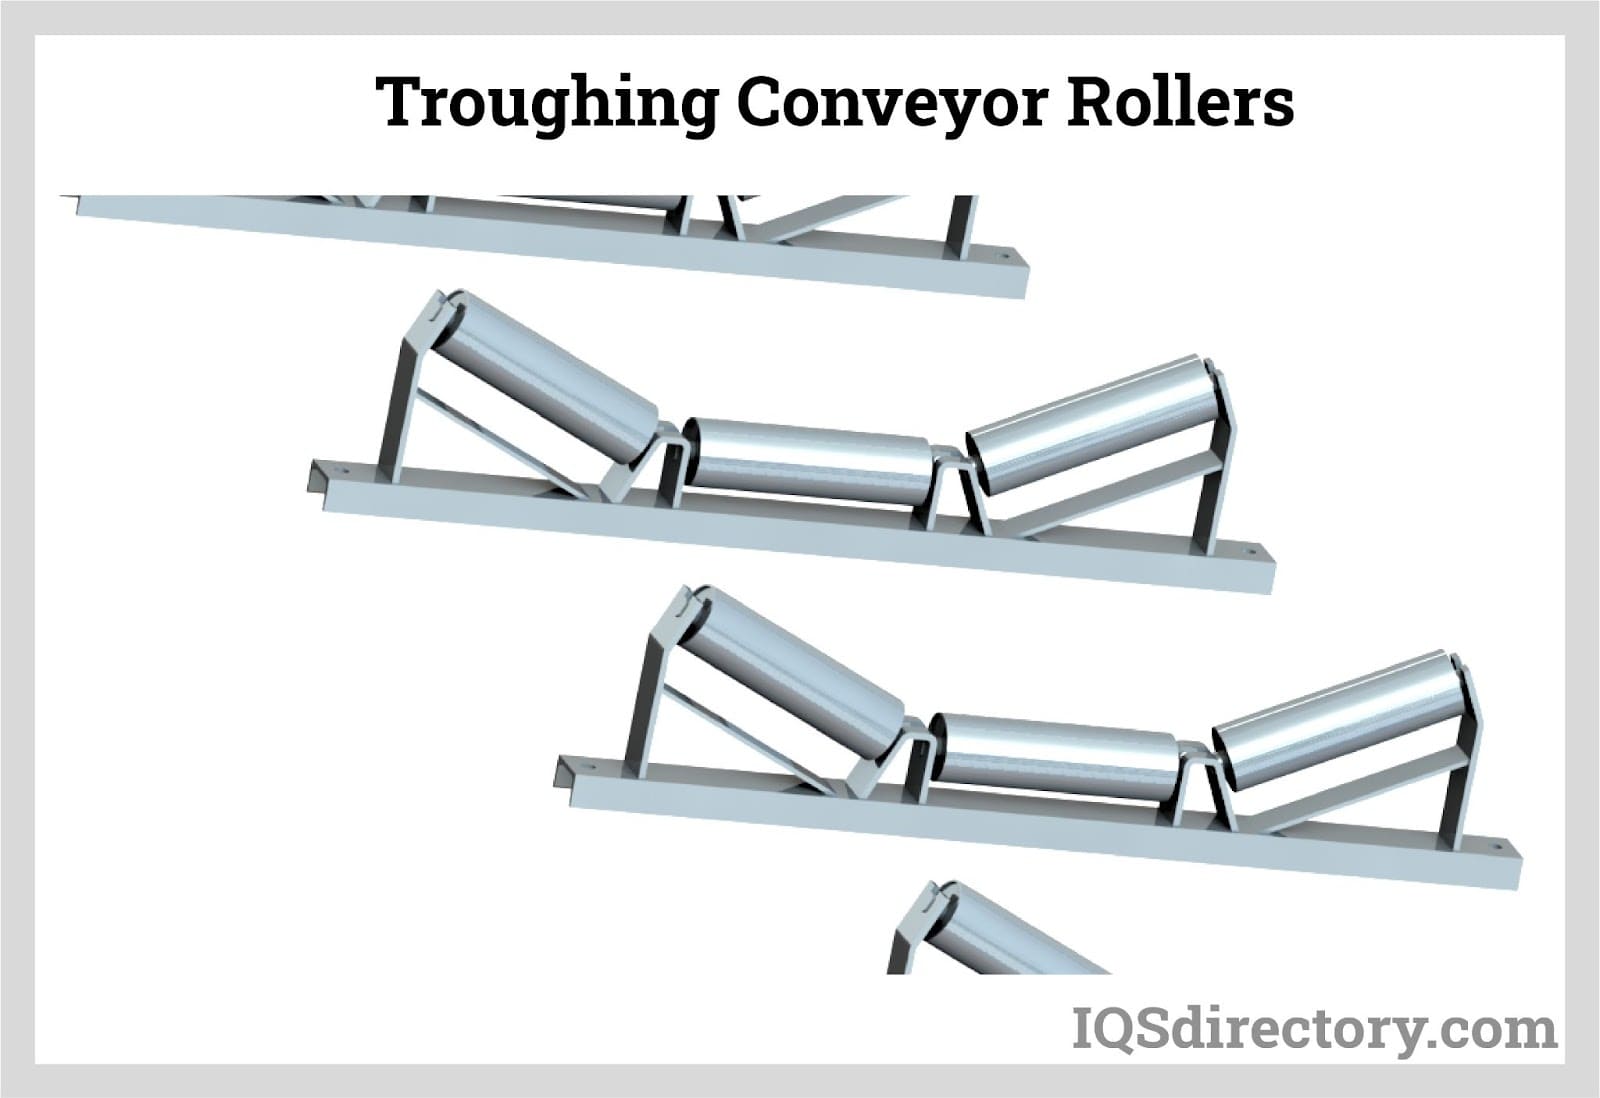 Troughing Conveyor Rollers